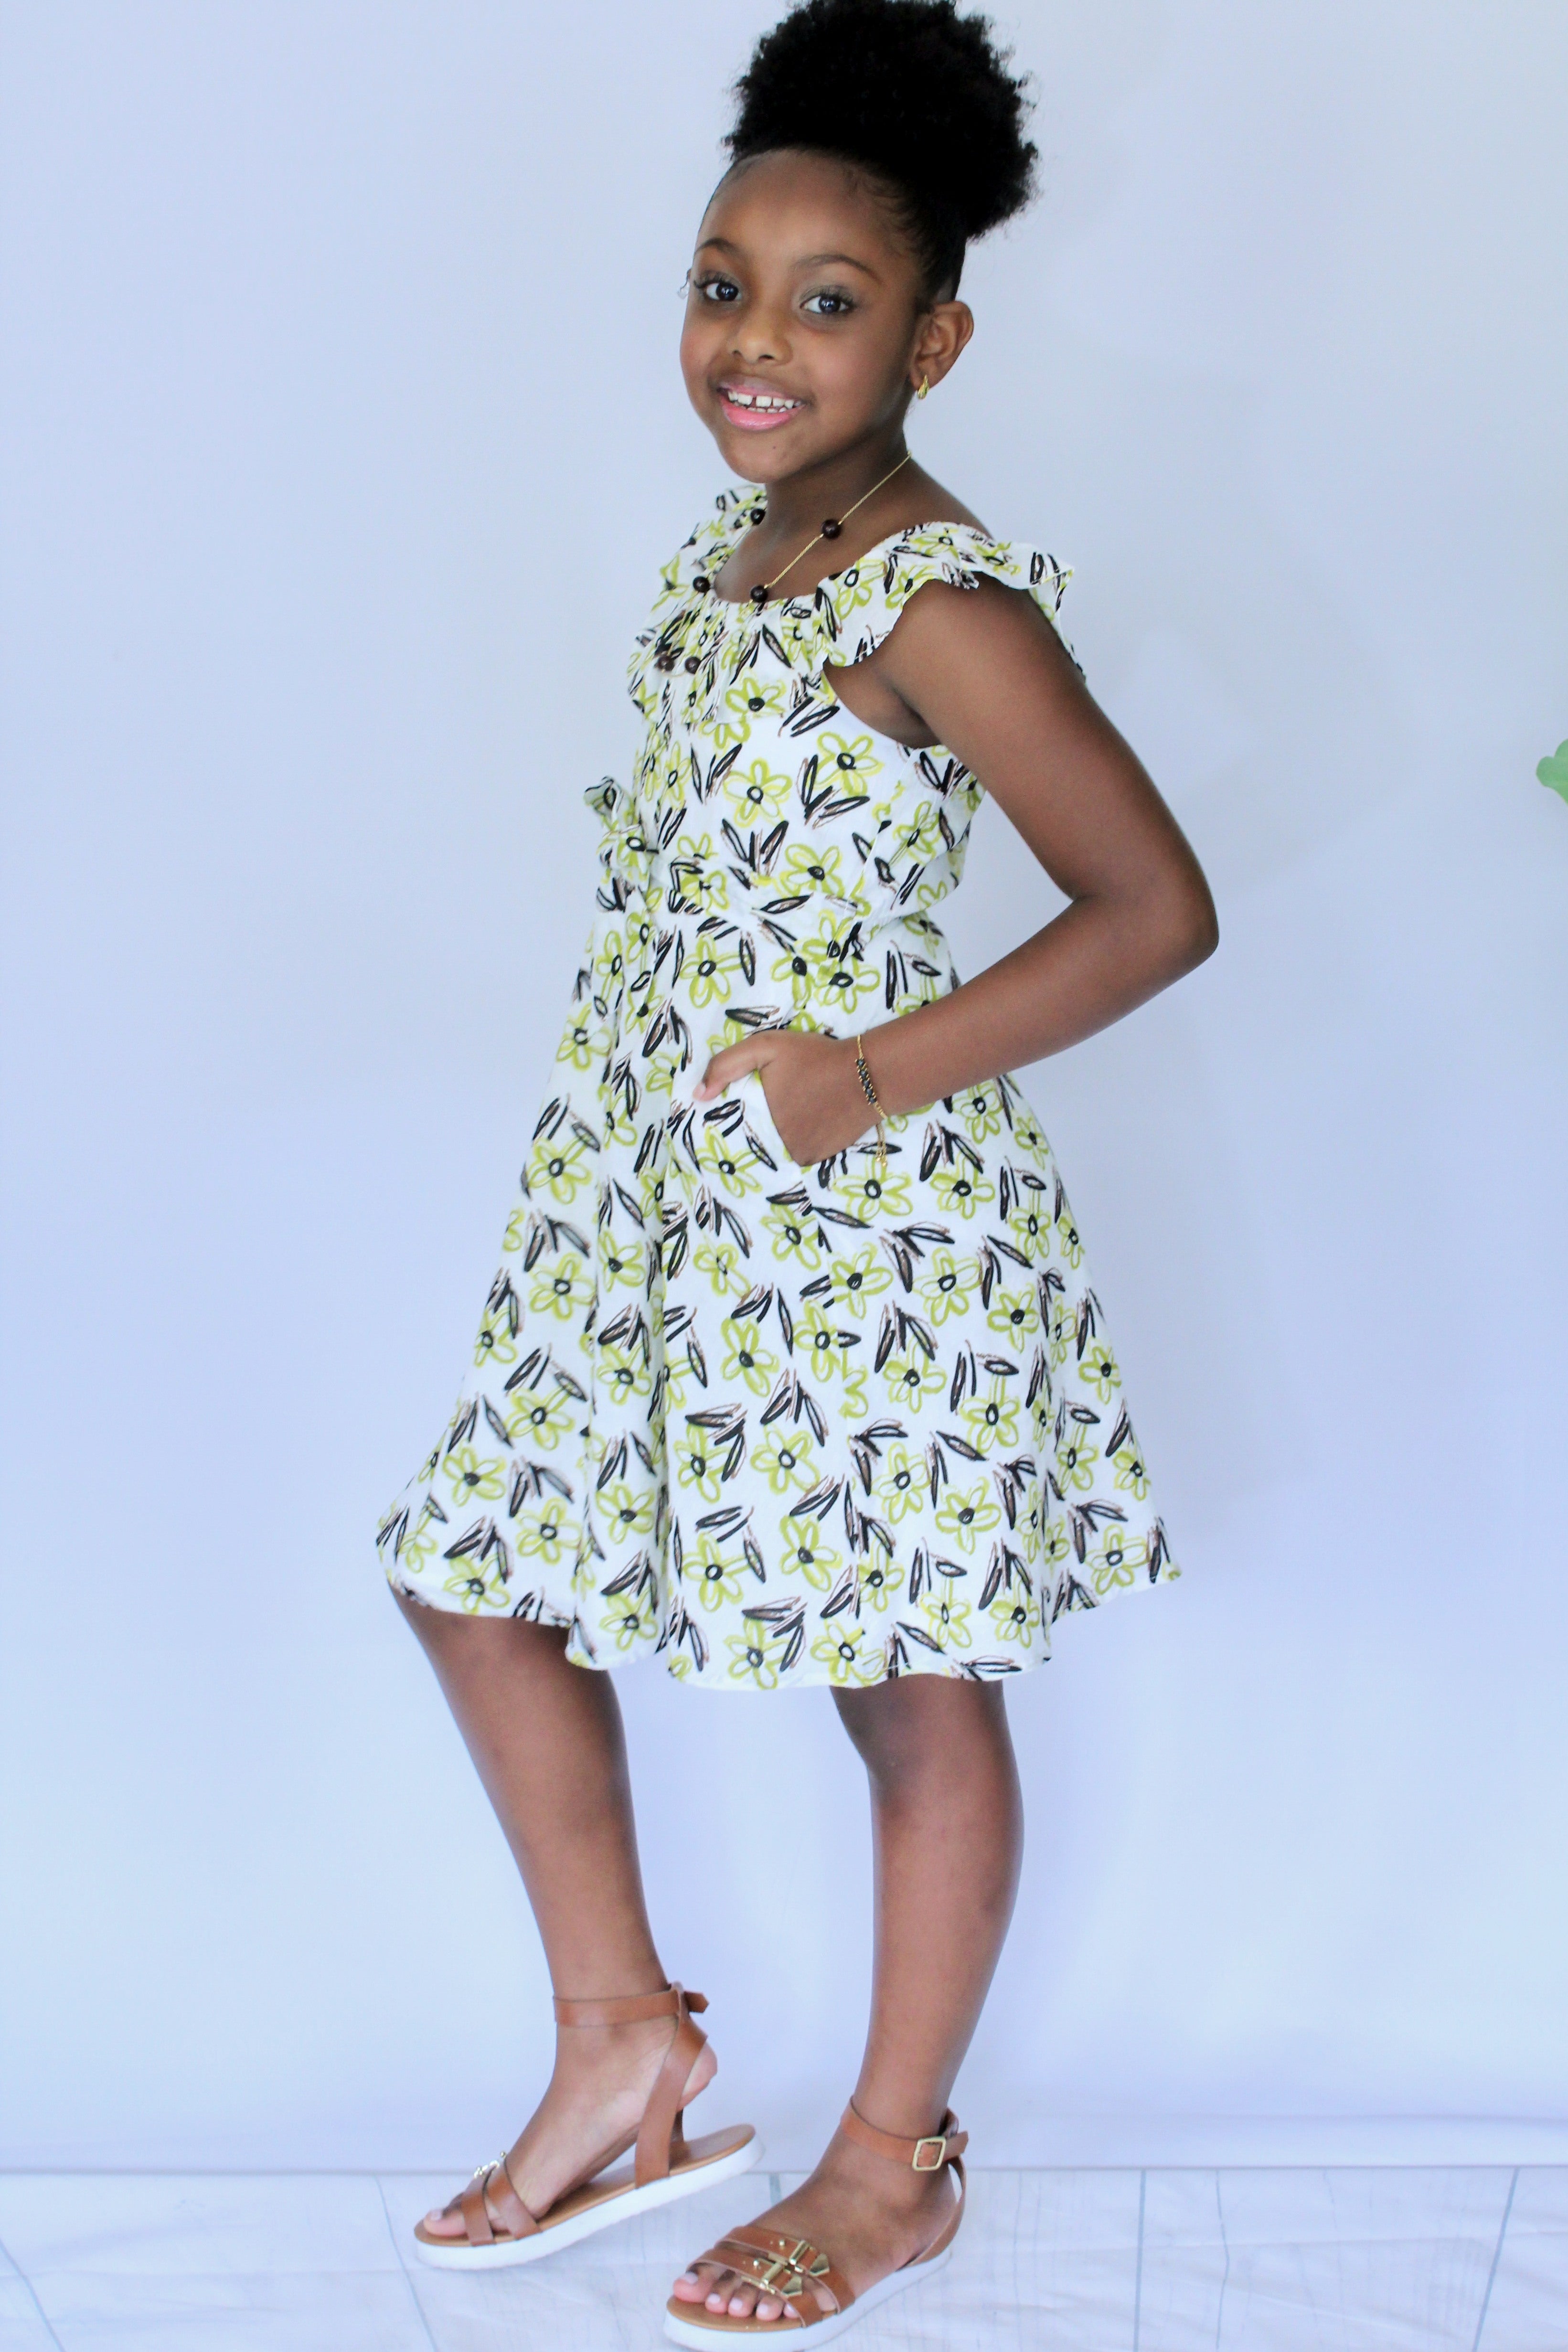 Miz Kelsea Baby Ruffled Floral Dress in Off- White & Lemon - Houzz of DVA Boutique